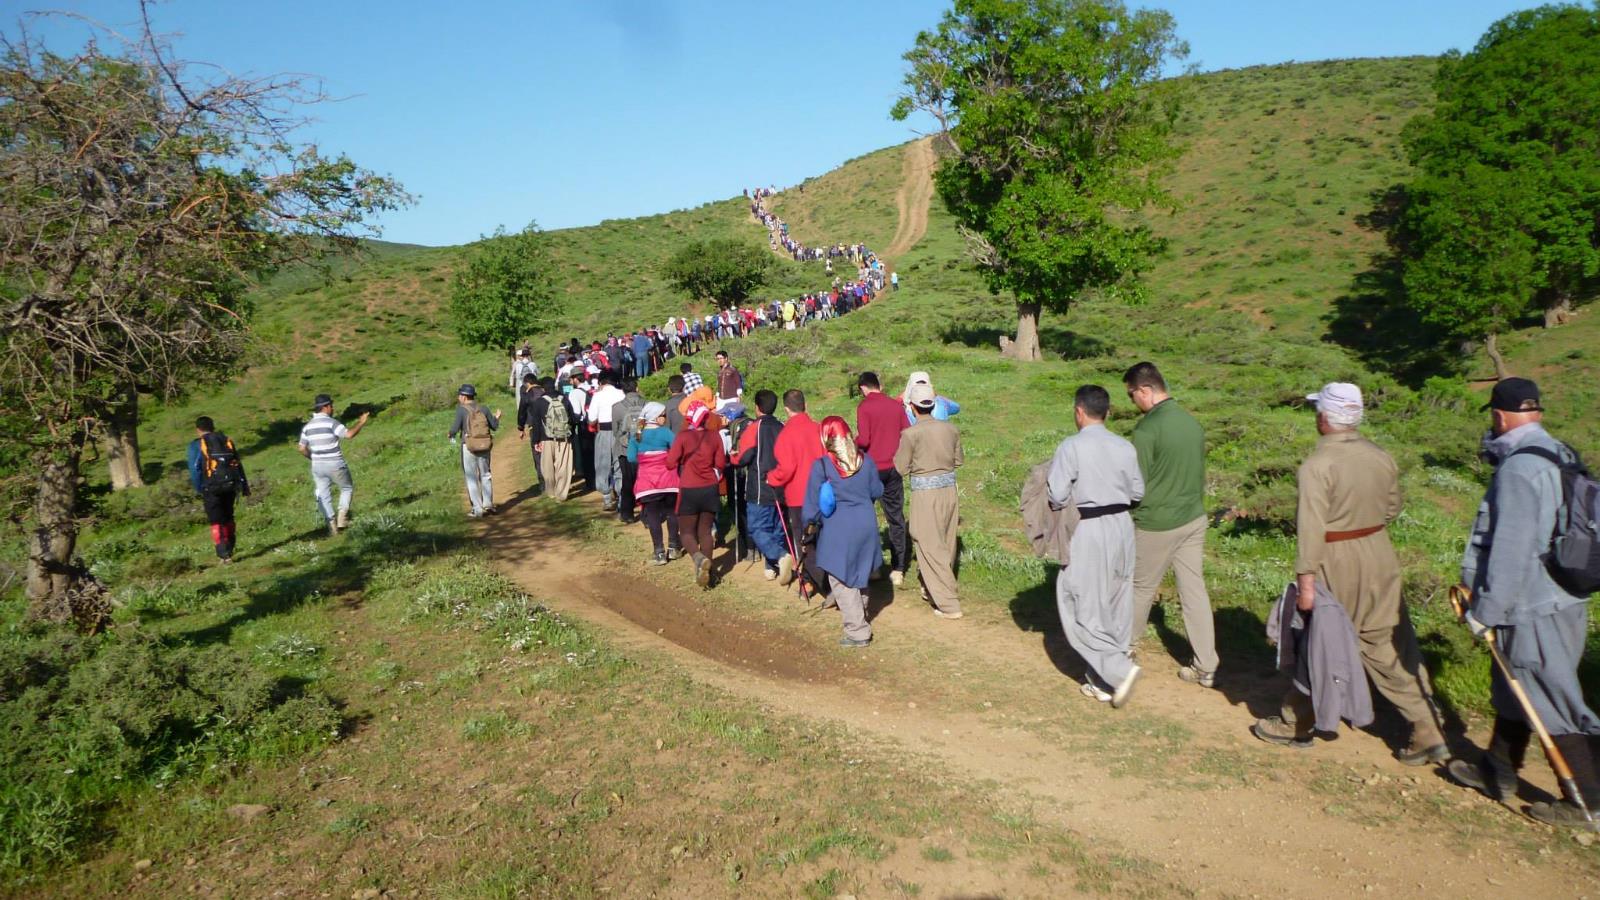  عشرات المواطنين يتوجهون نحو الجبال في فصل الربيع(الجزيرة)